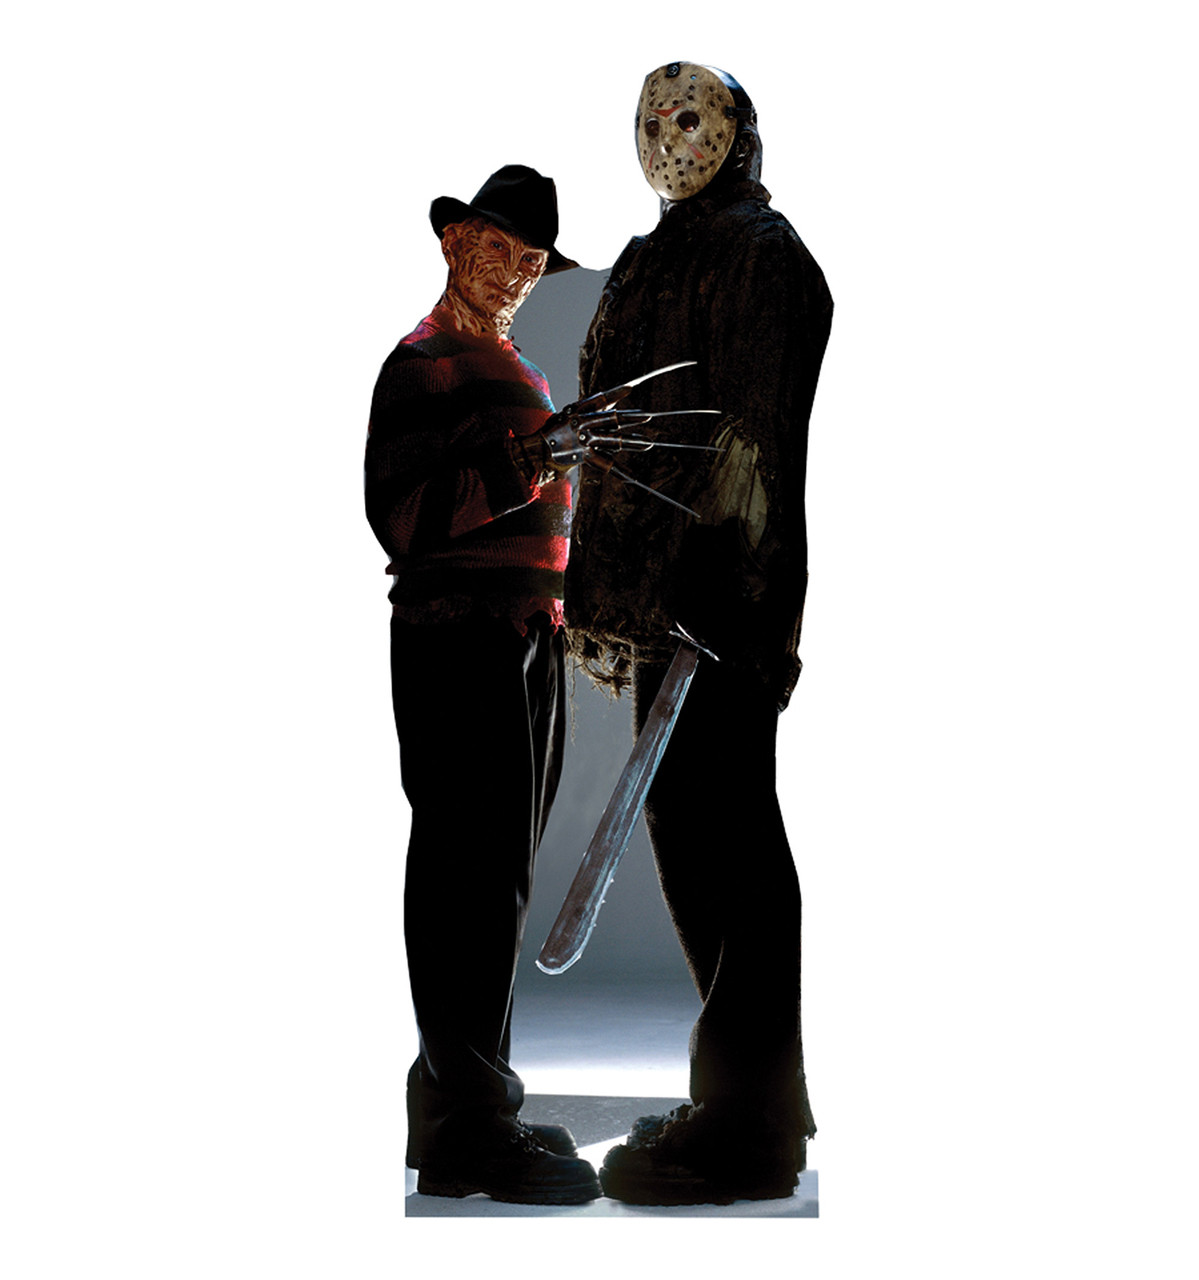 Freddy v Jason lifesize cardboard cutout